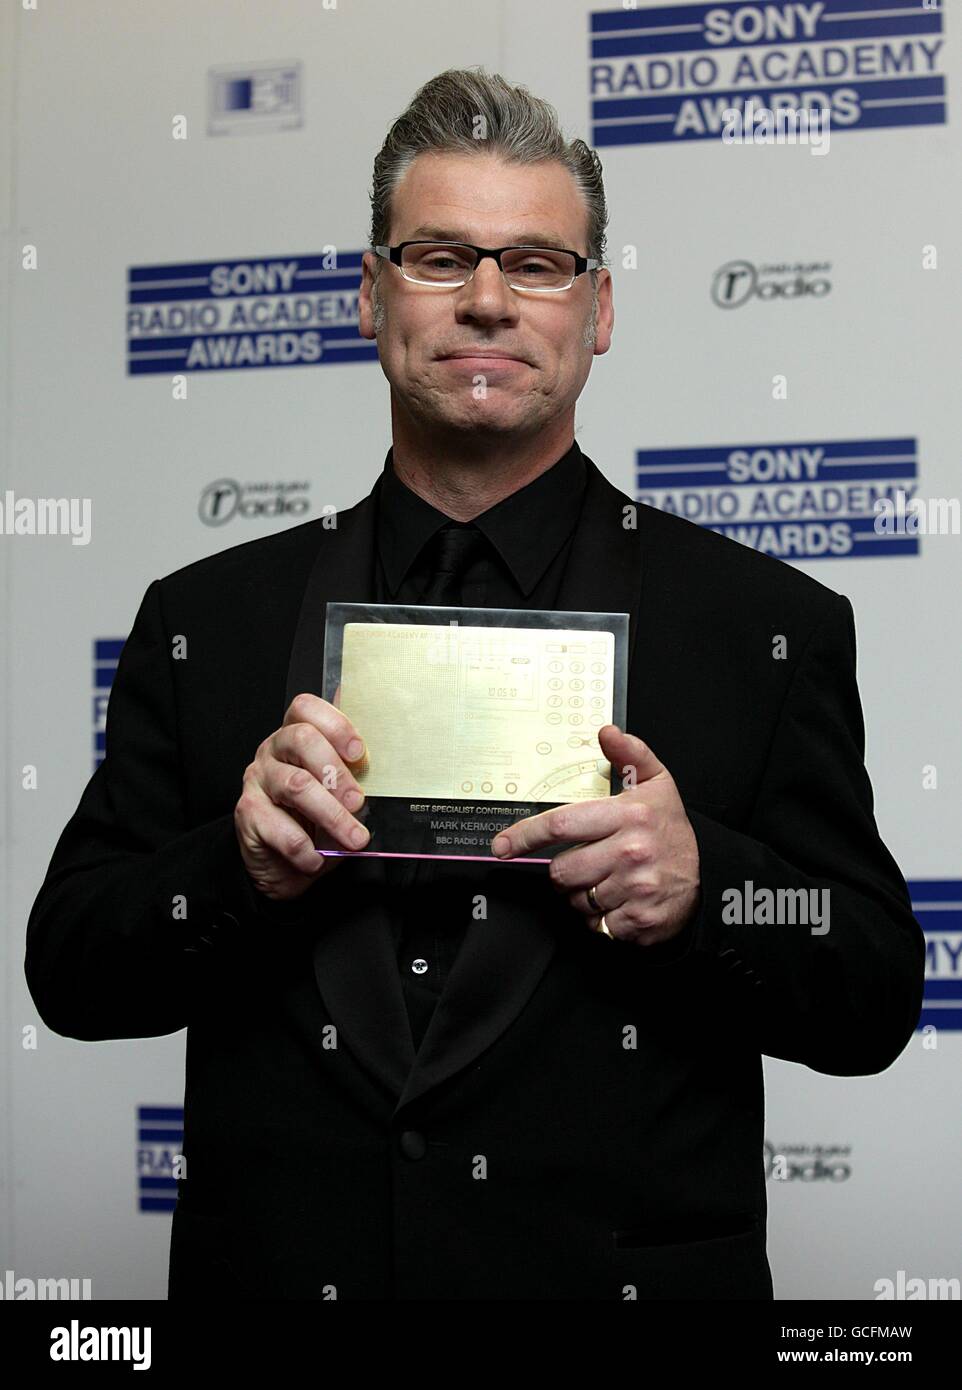 The Sony Radio Academy Awards 2010 - London Stock Photo